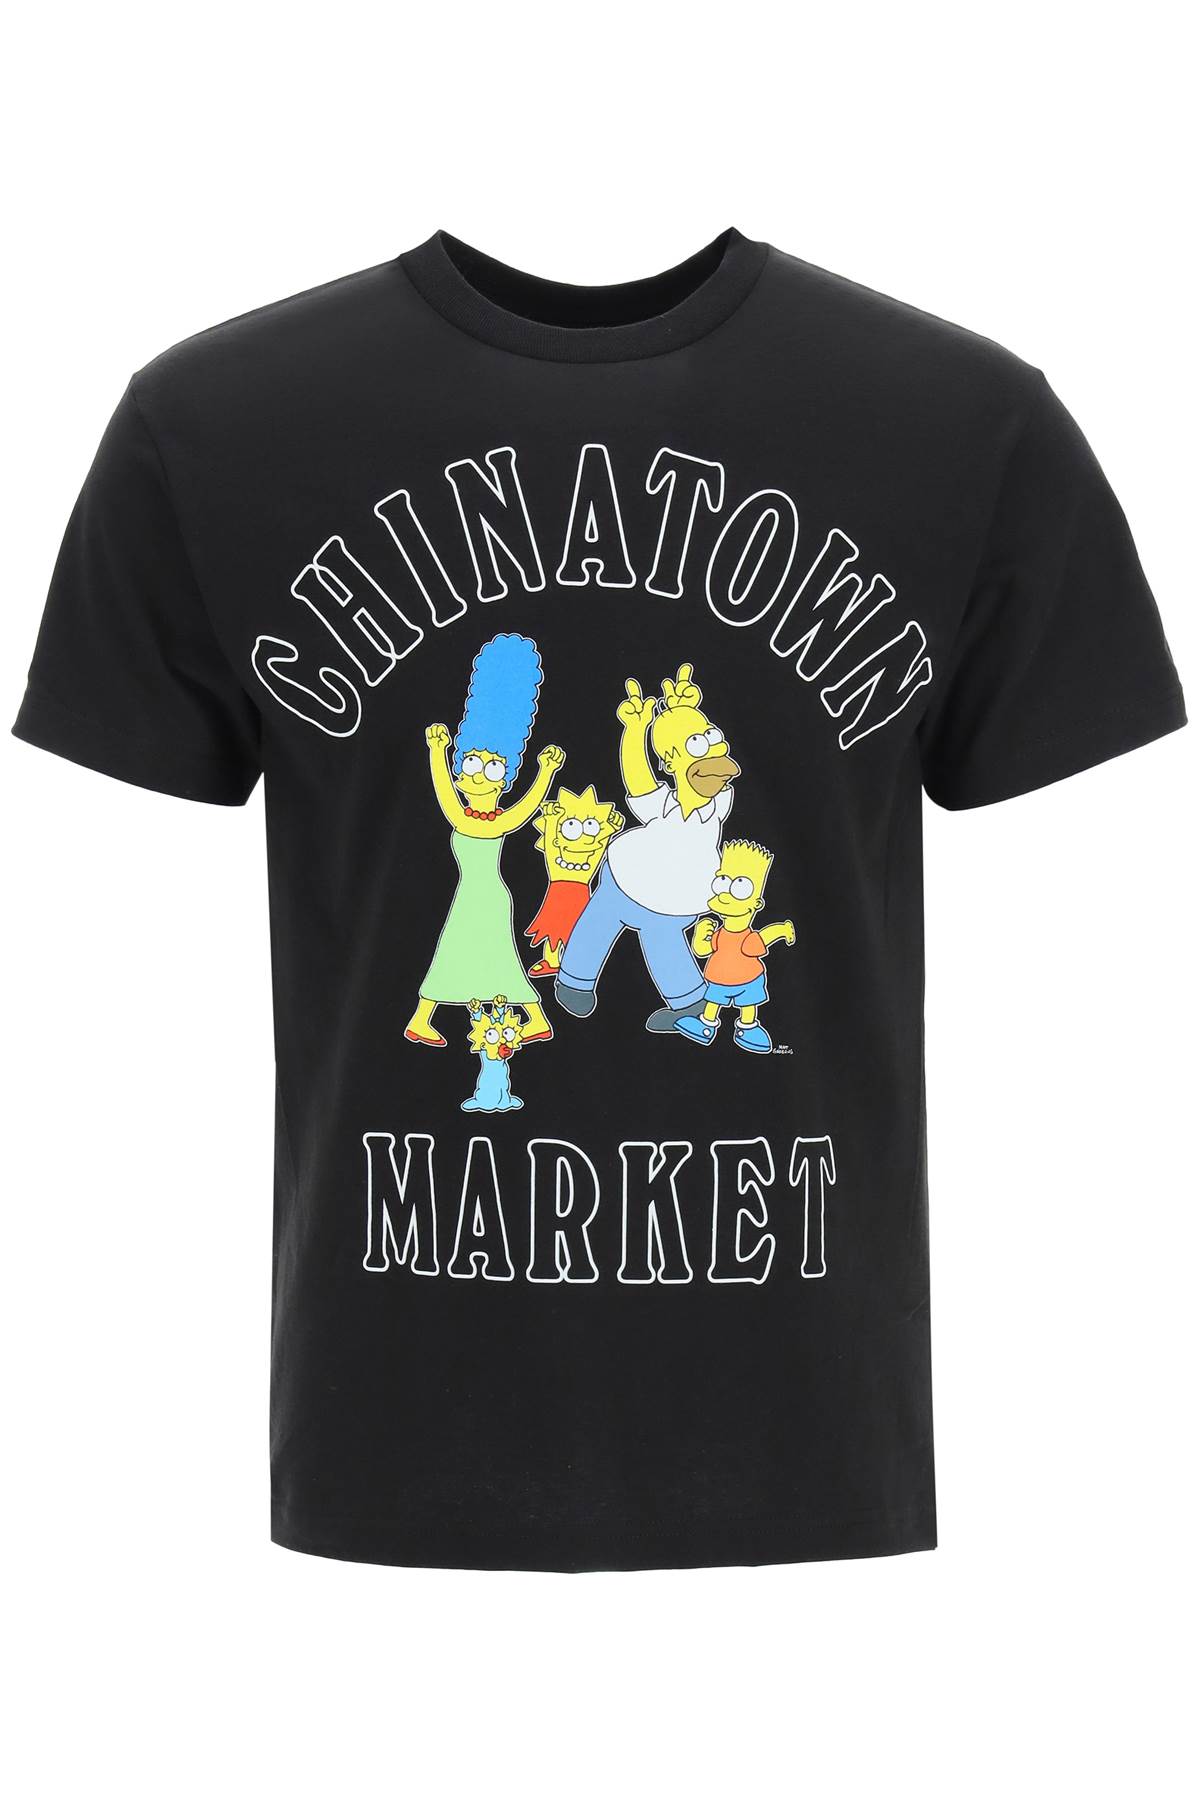 Market X The Simpsons Family Og T-shirt